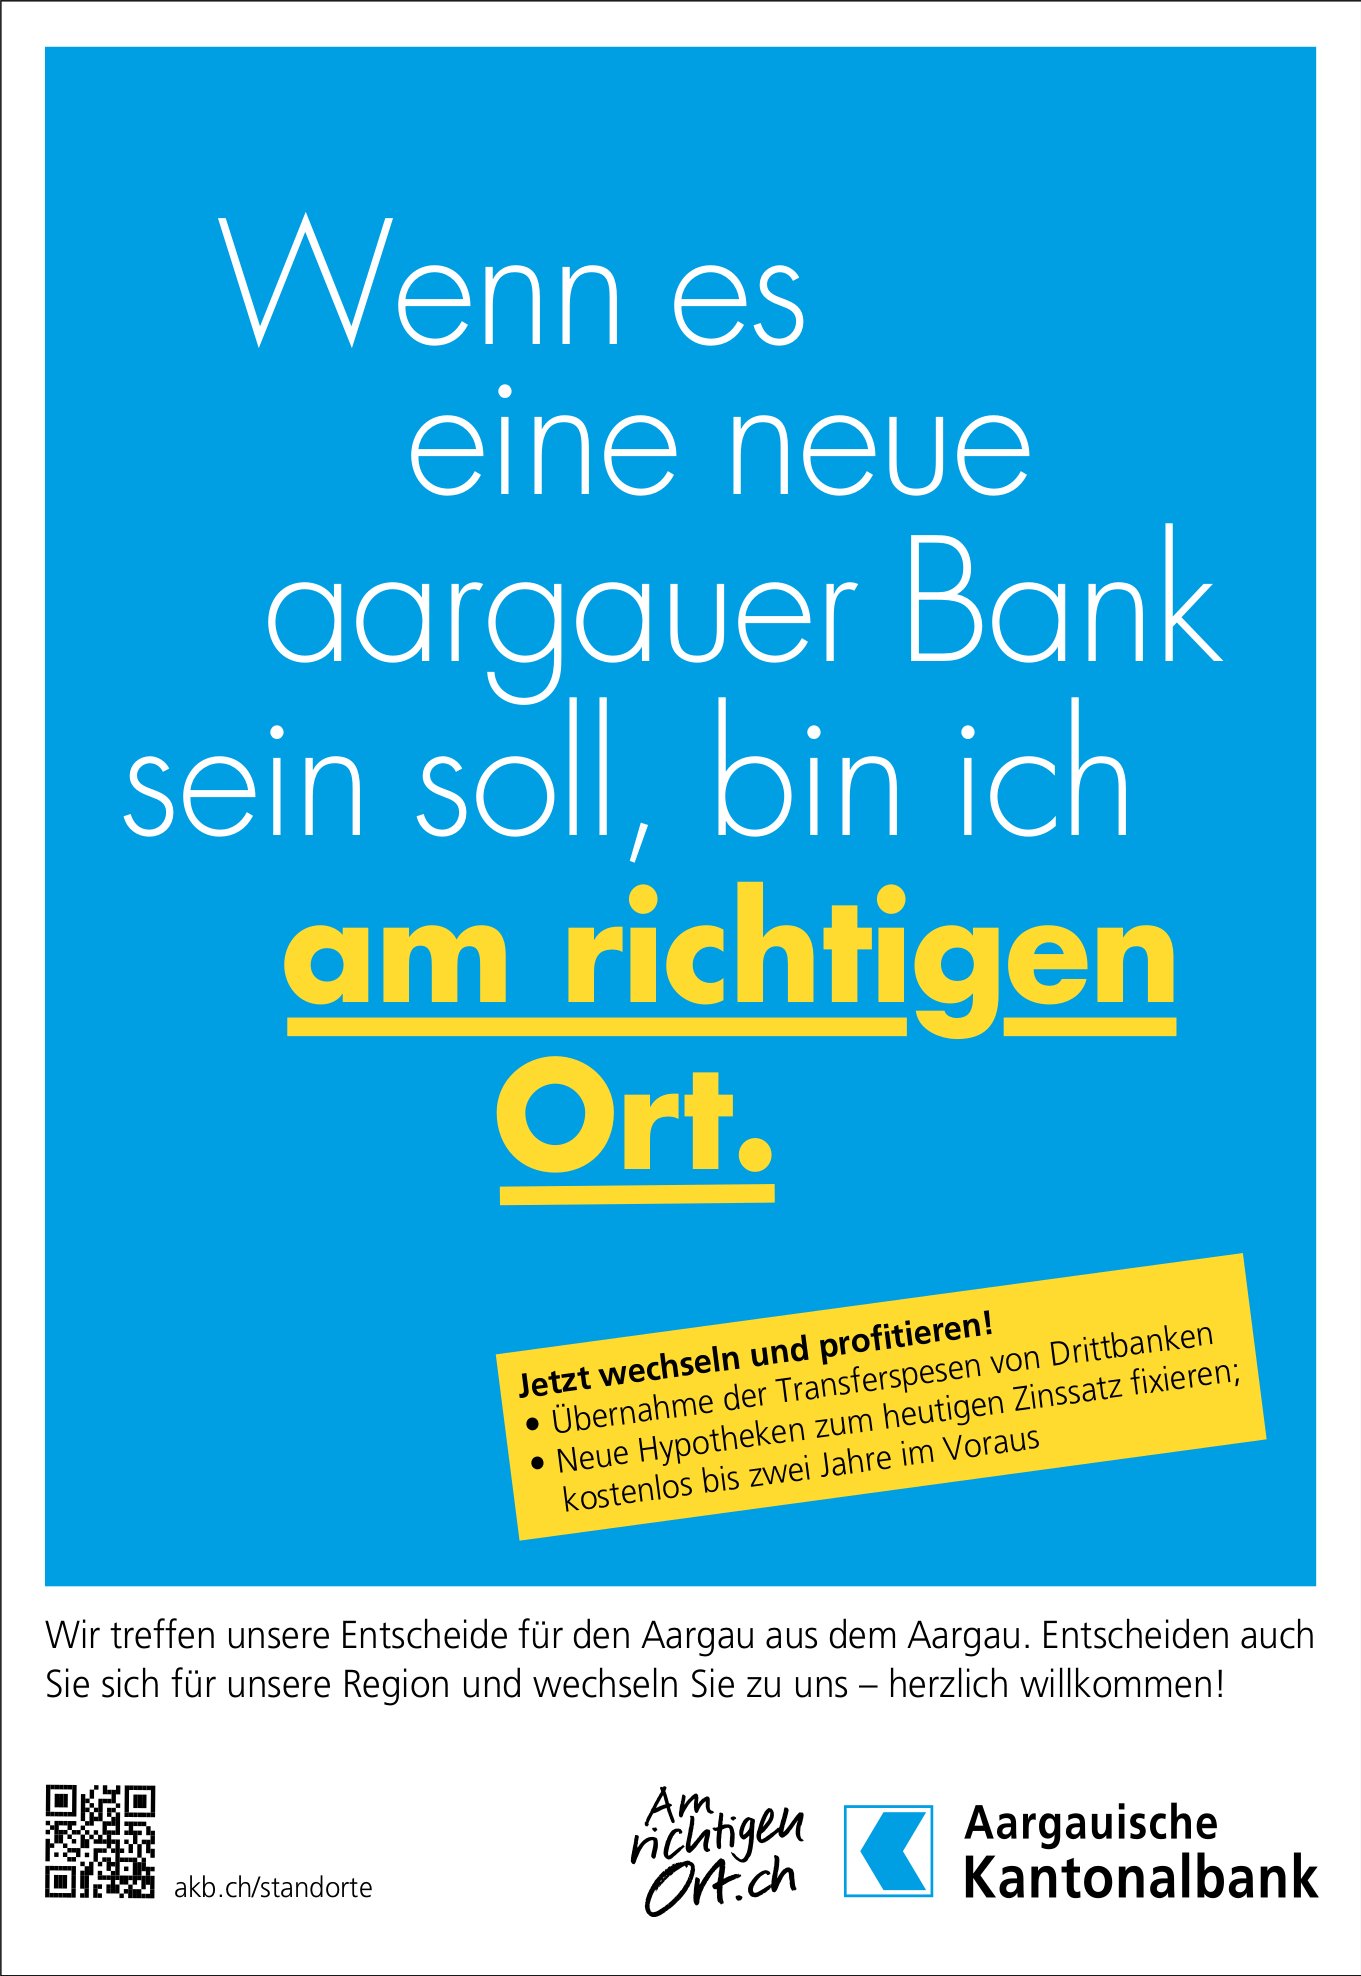 Aargauische Kantonalbank, Wenn es eine neue aargauer Bank sein soll